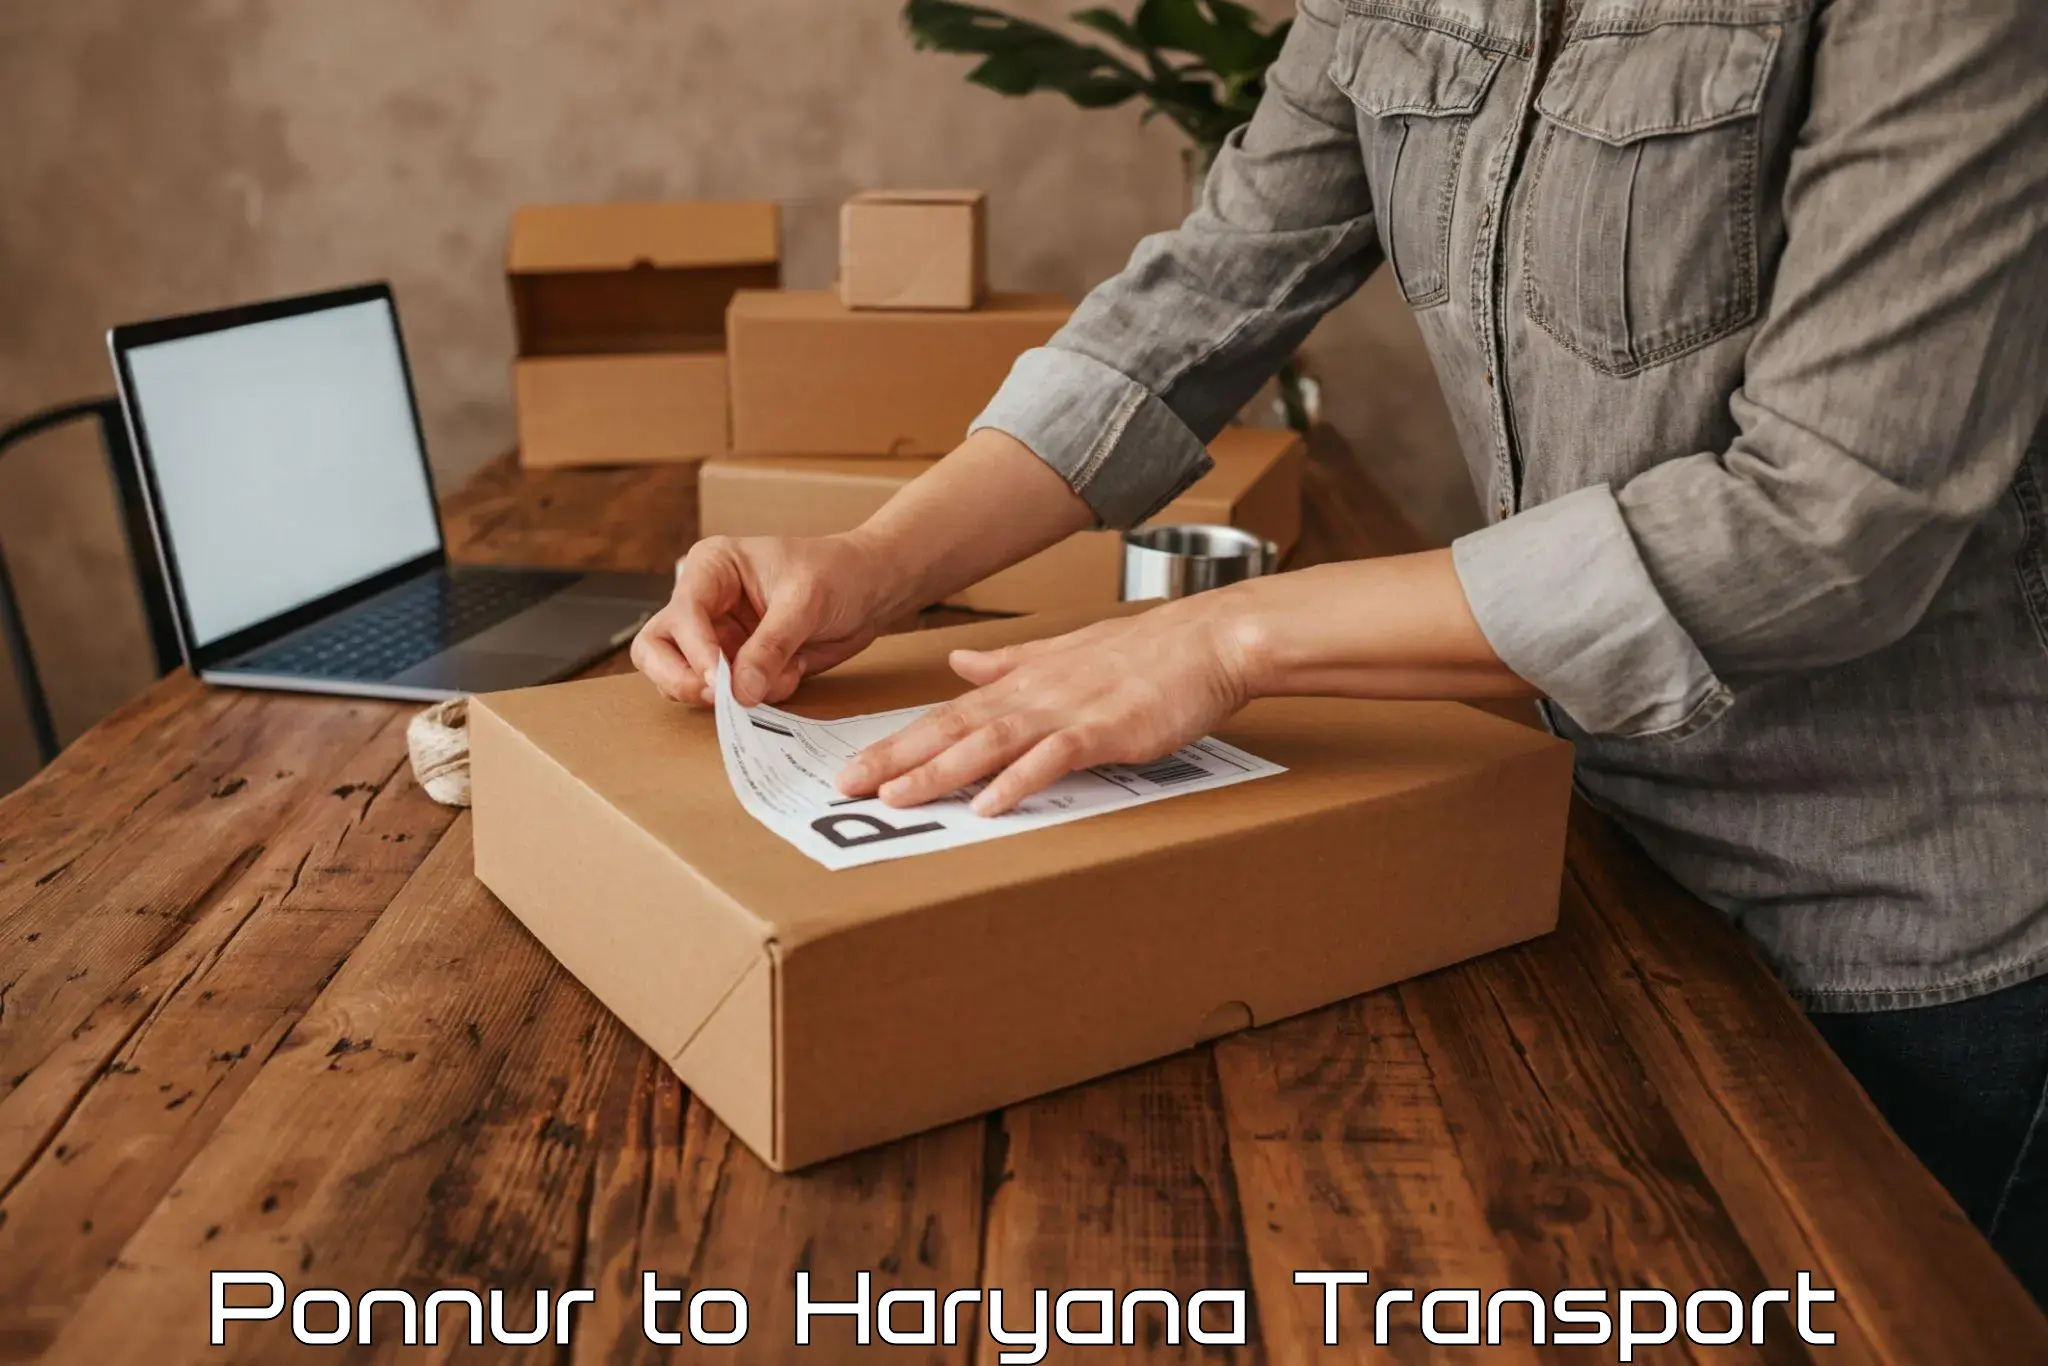 Online transport booking Ponnur to Panchkula